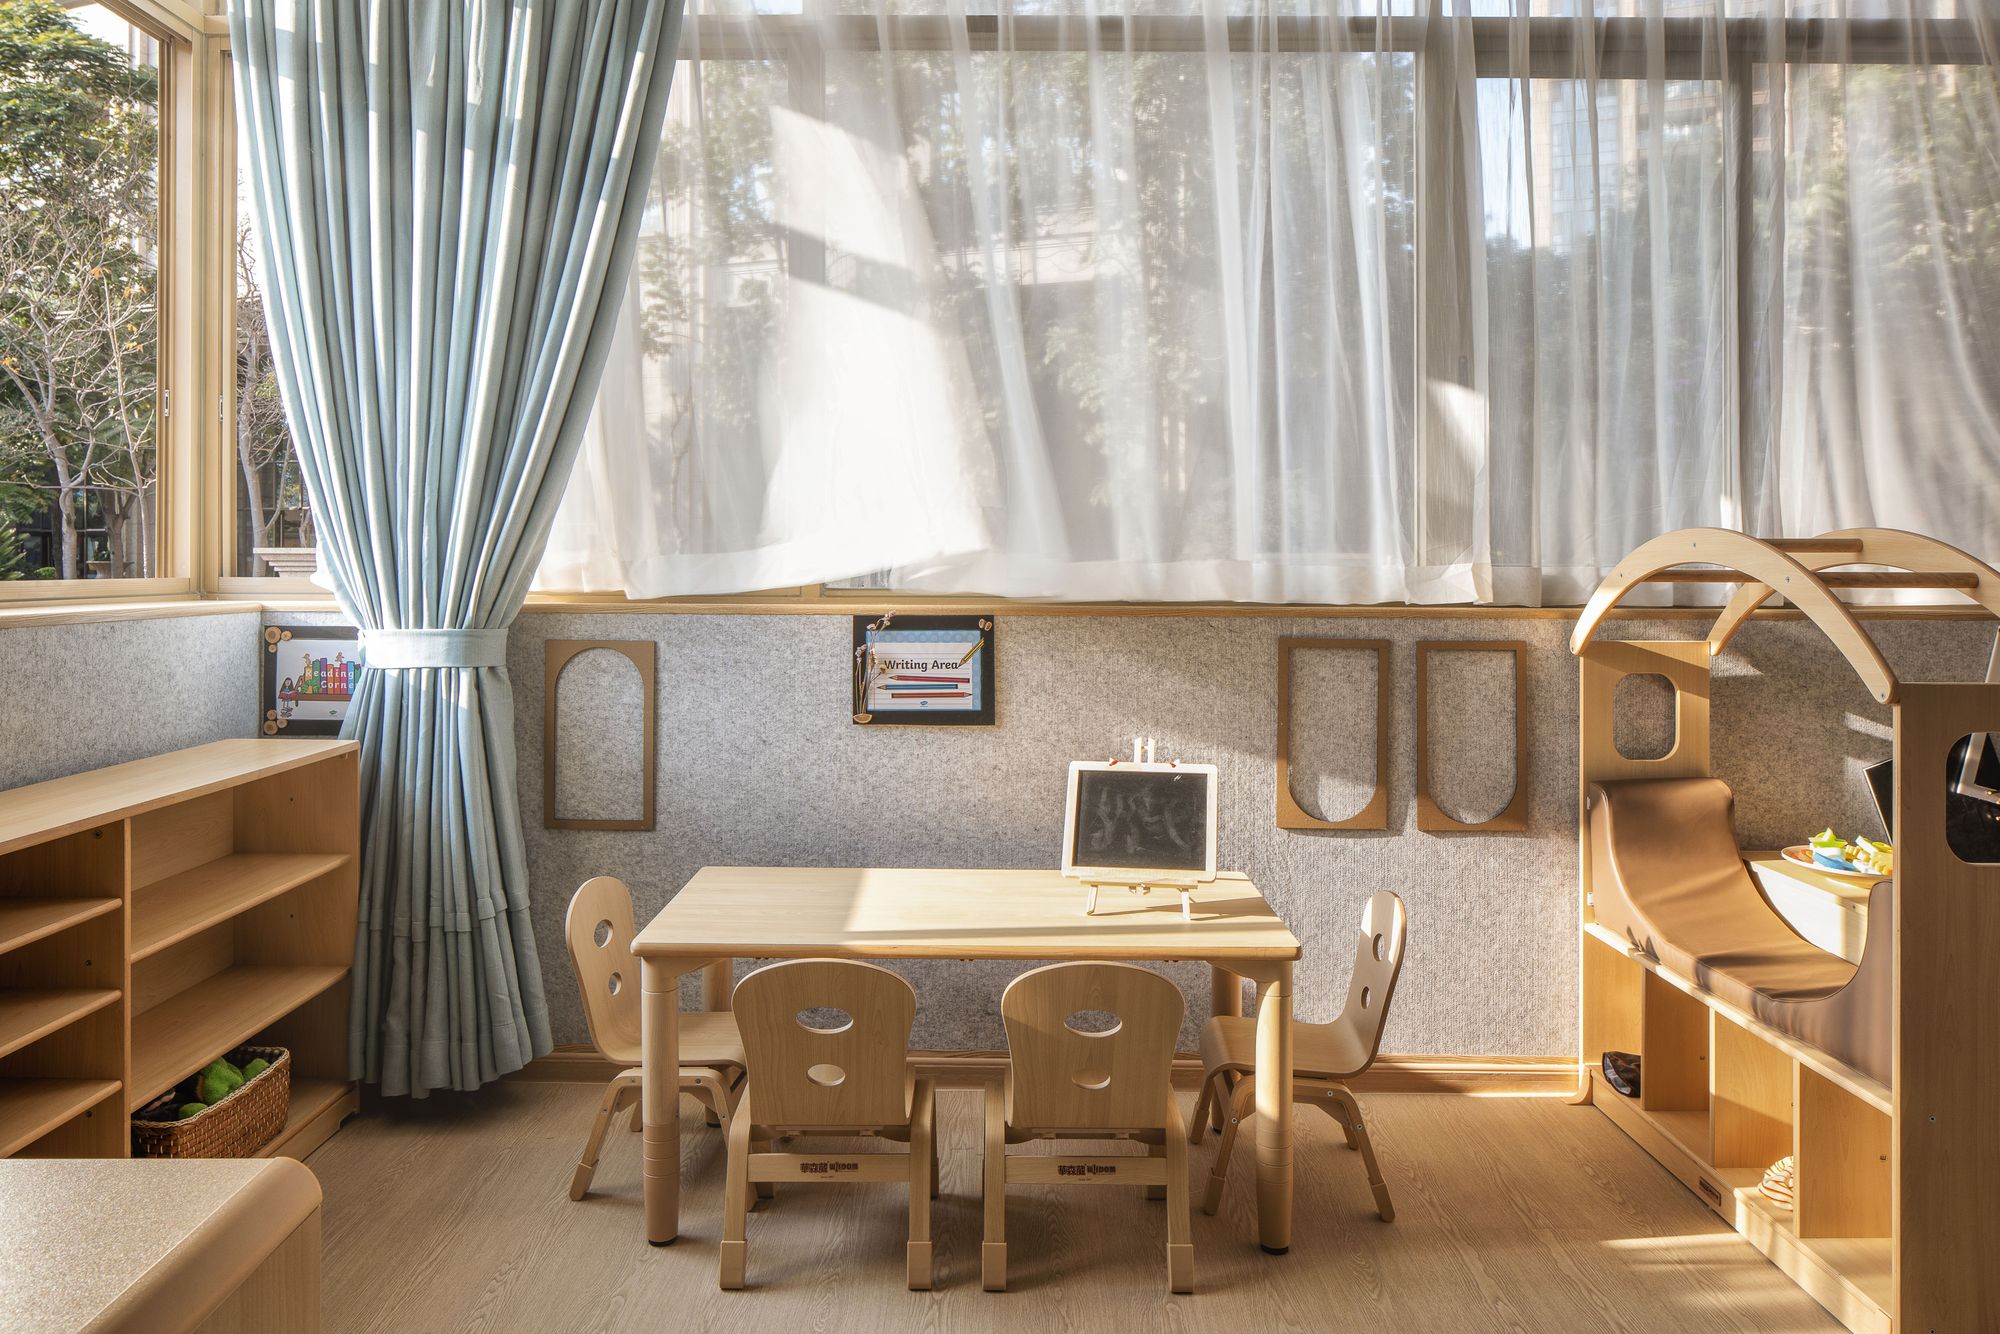 图片[15]|皇冠梦想国际幼儿园|ART-Arrakis | 建筑室内设计的创新与灵感